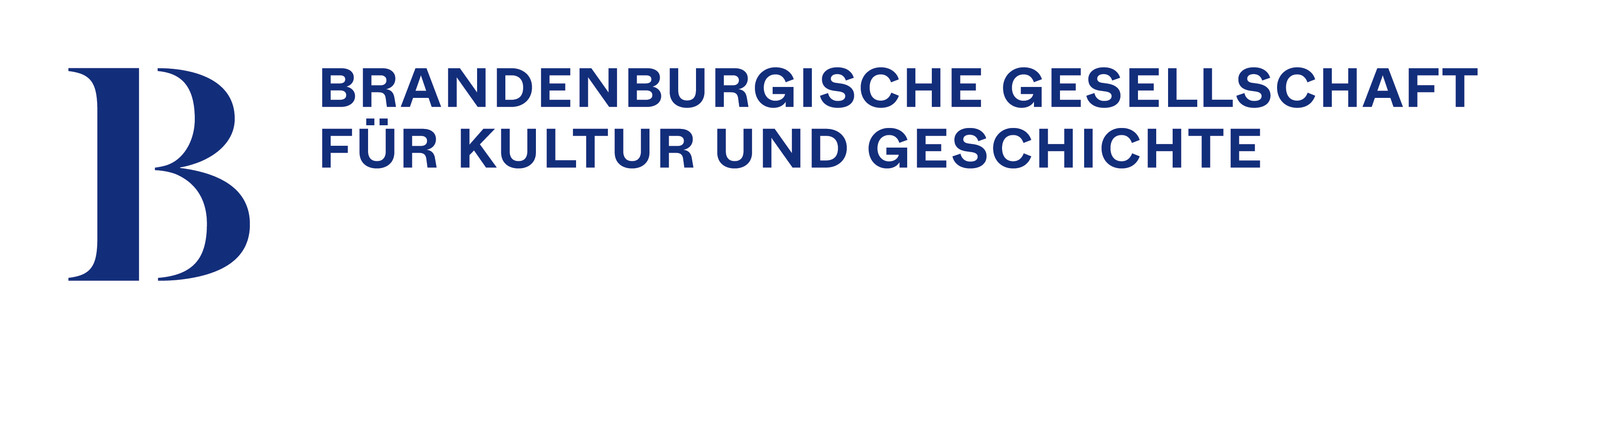 Logo Brandenburgische Gesellschaft für Kultur und Geschichte